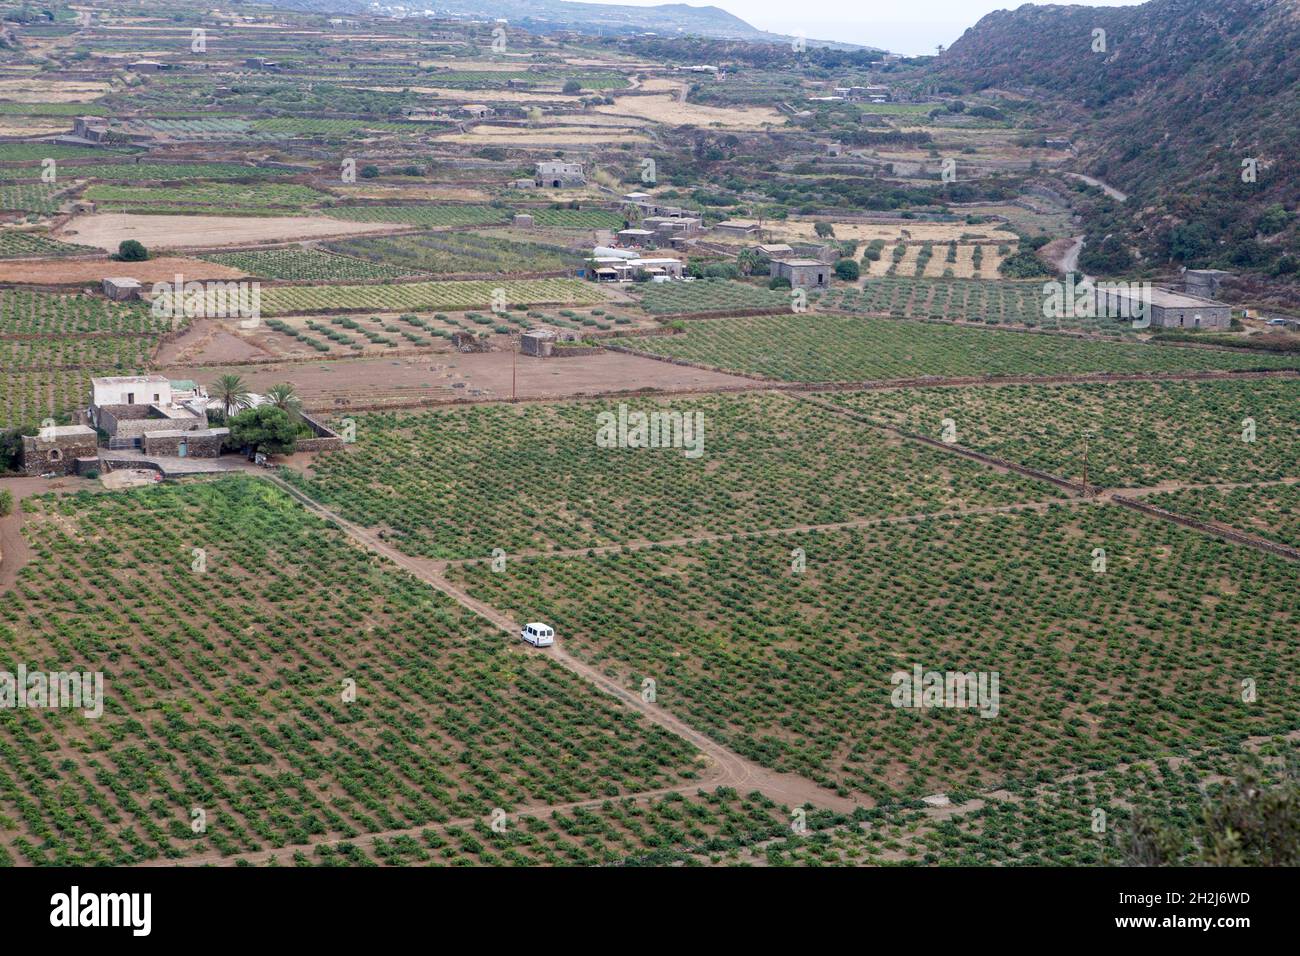 El valle de Monastero se encuentra entre las zonas más fértiles de la isla, casi totalmente cubiertas de viñedos de las conocidas uvas Zibibbo Foto de stock